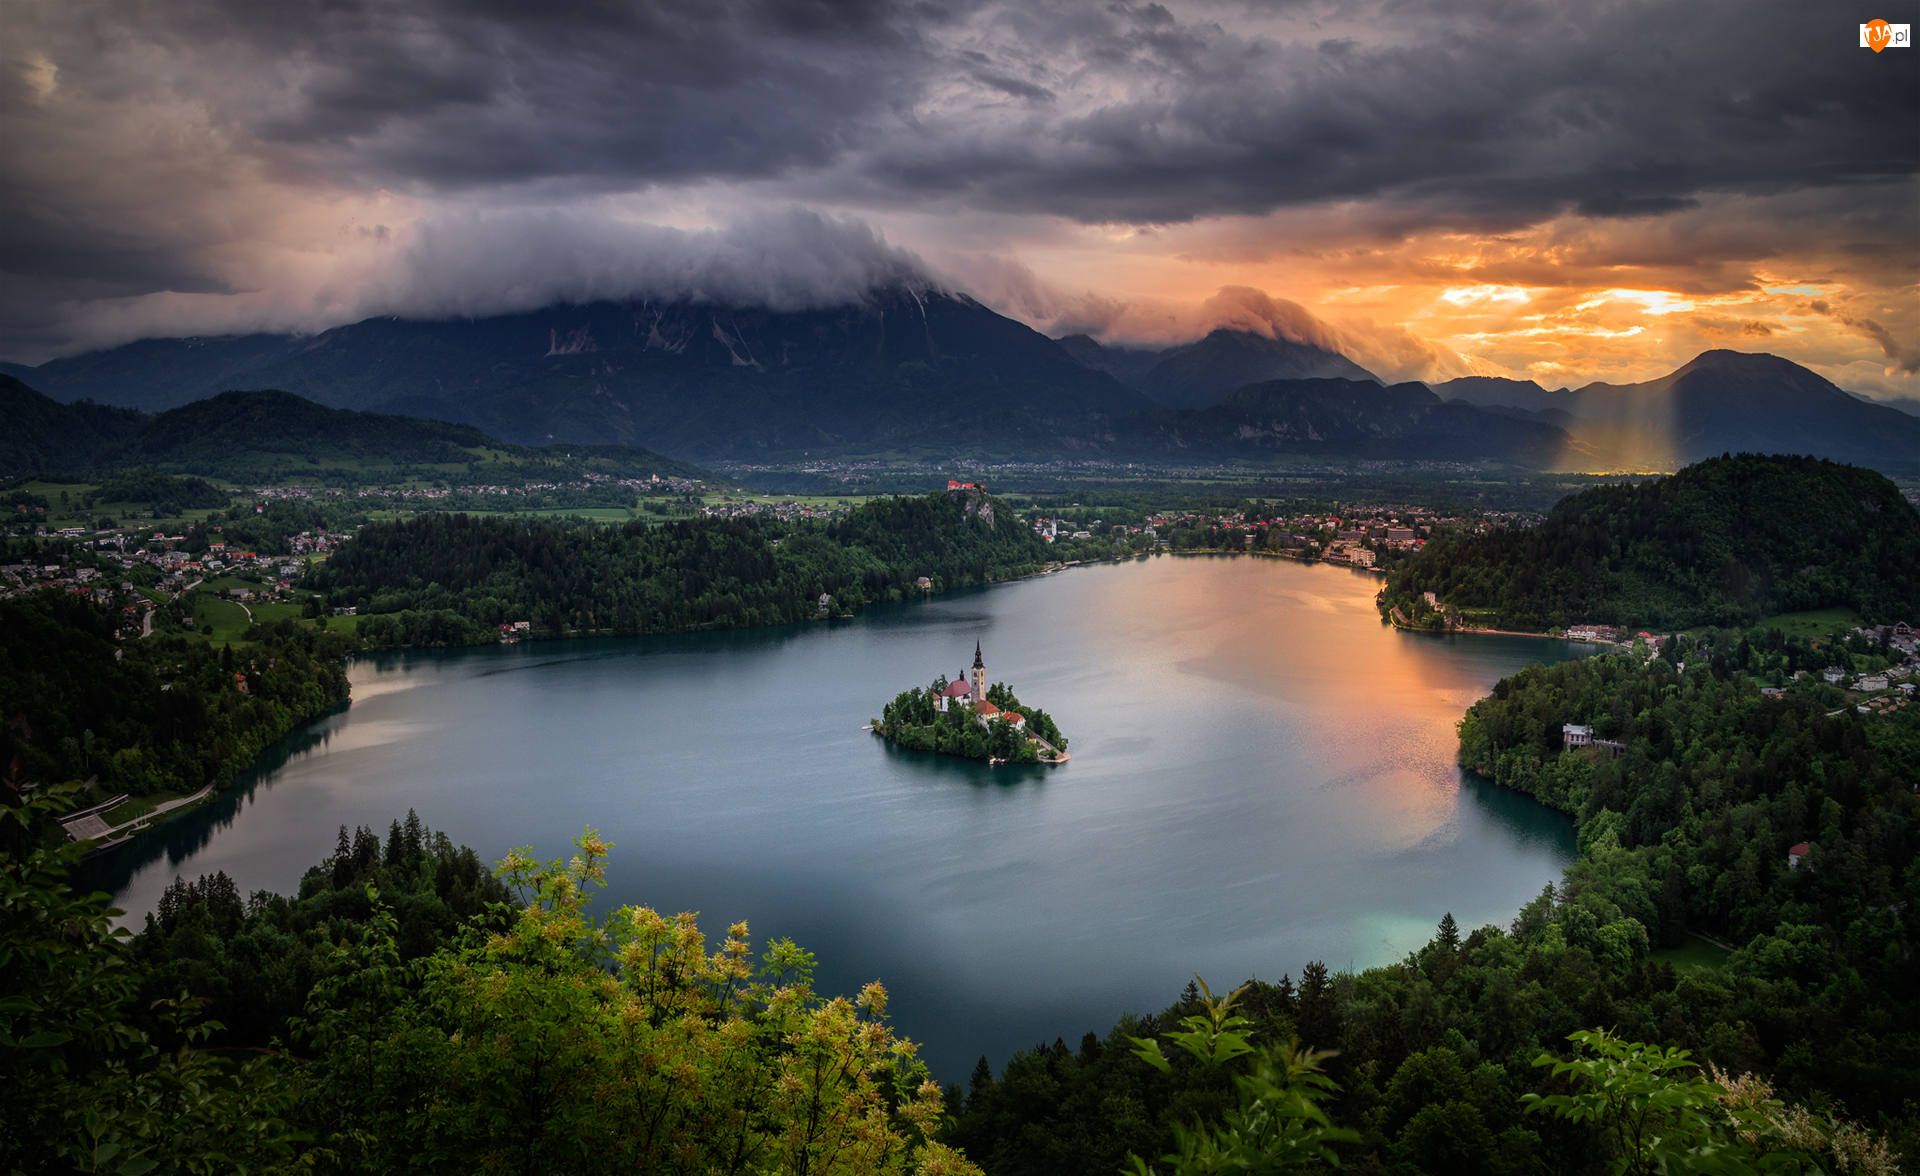 Wyspa Blejski Otok, Góry Alpy Julijskie, Chmury, Słowenia, Przebijające światło, Poranek, Jezioro Bled